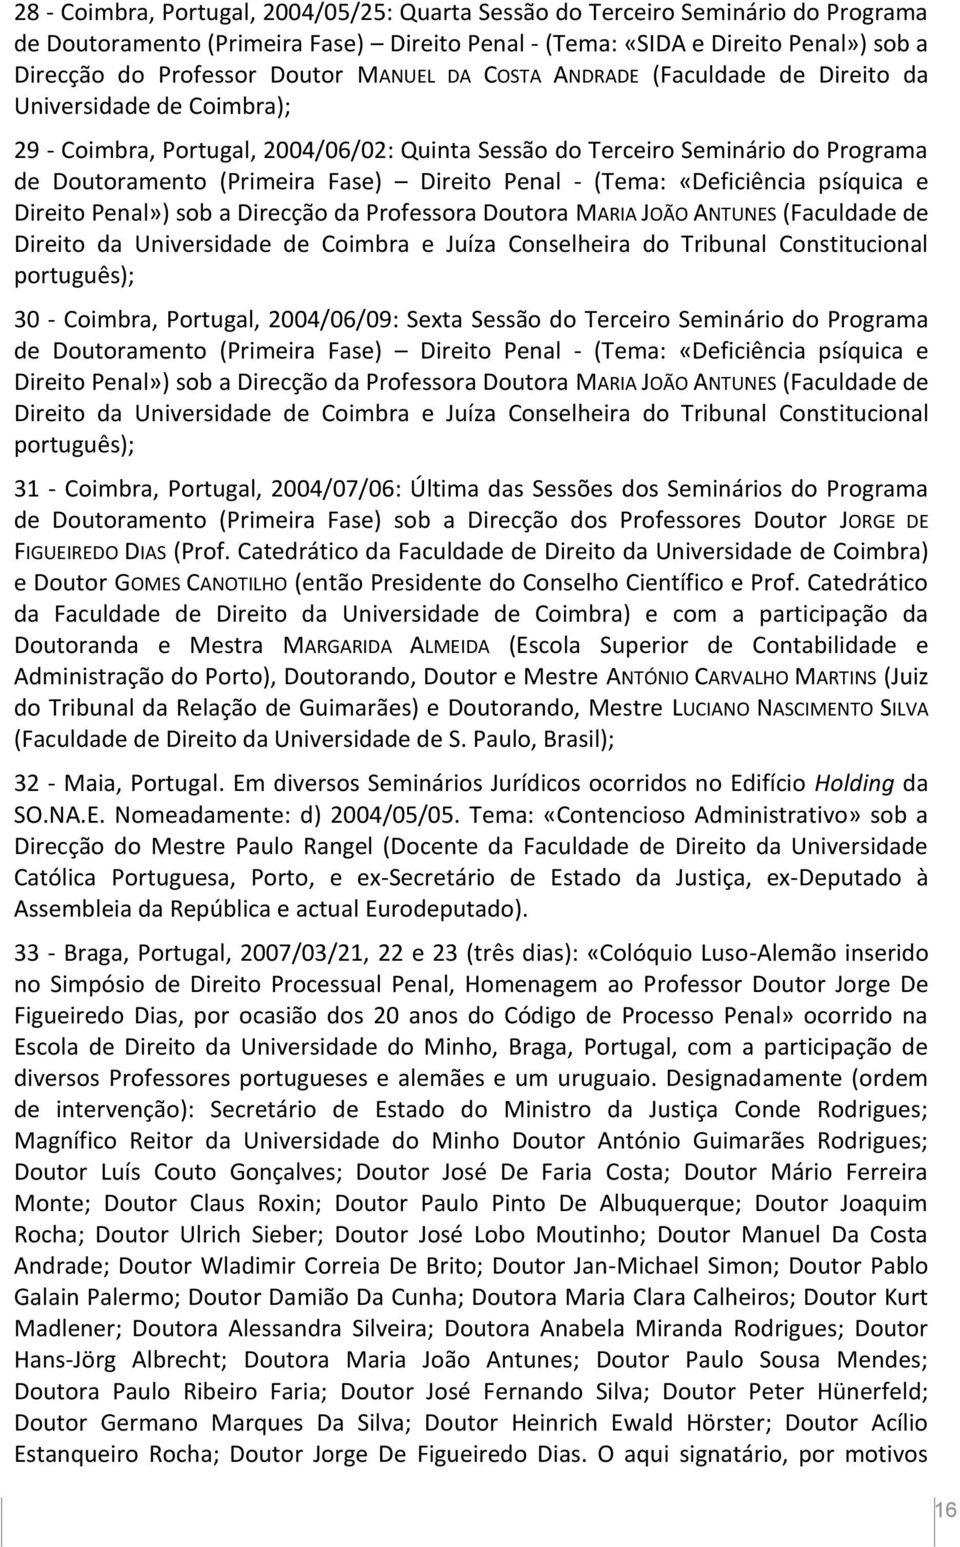 Penal - (Tema: «Deficiência psíquica e Direito Penal») sob a Direcção da Professora Doutora MARIA JOÃO ANTUNES (Faculdade de Direito da Universidade de Coimbra e Juíza Conselheira do Tribunal